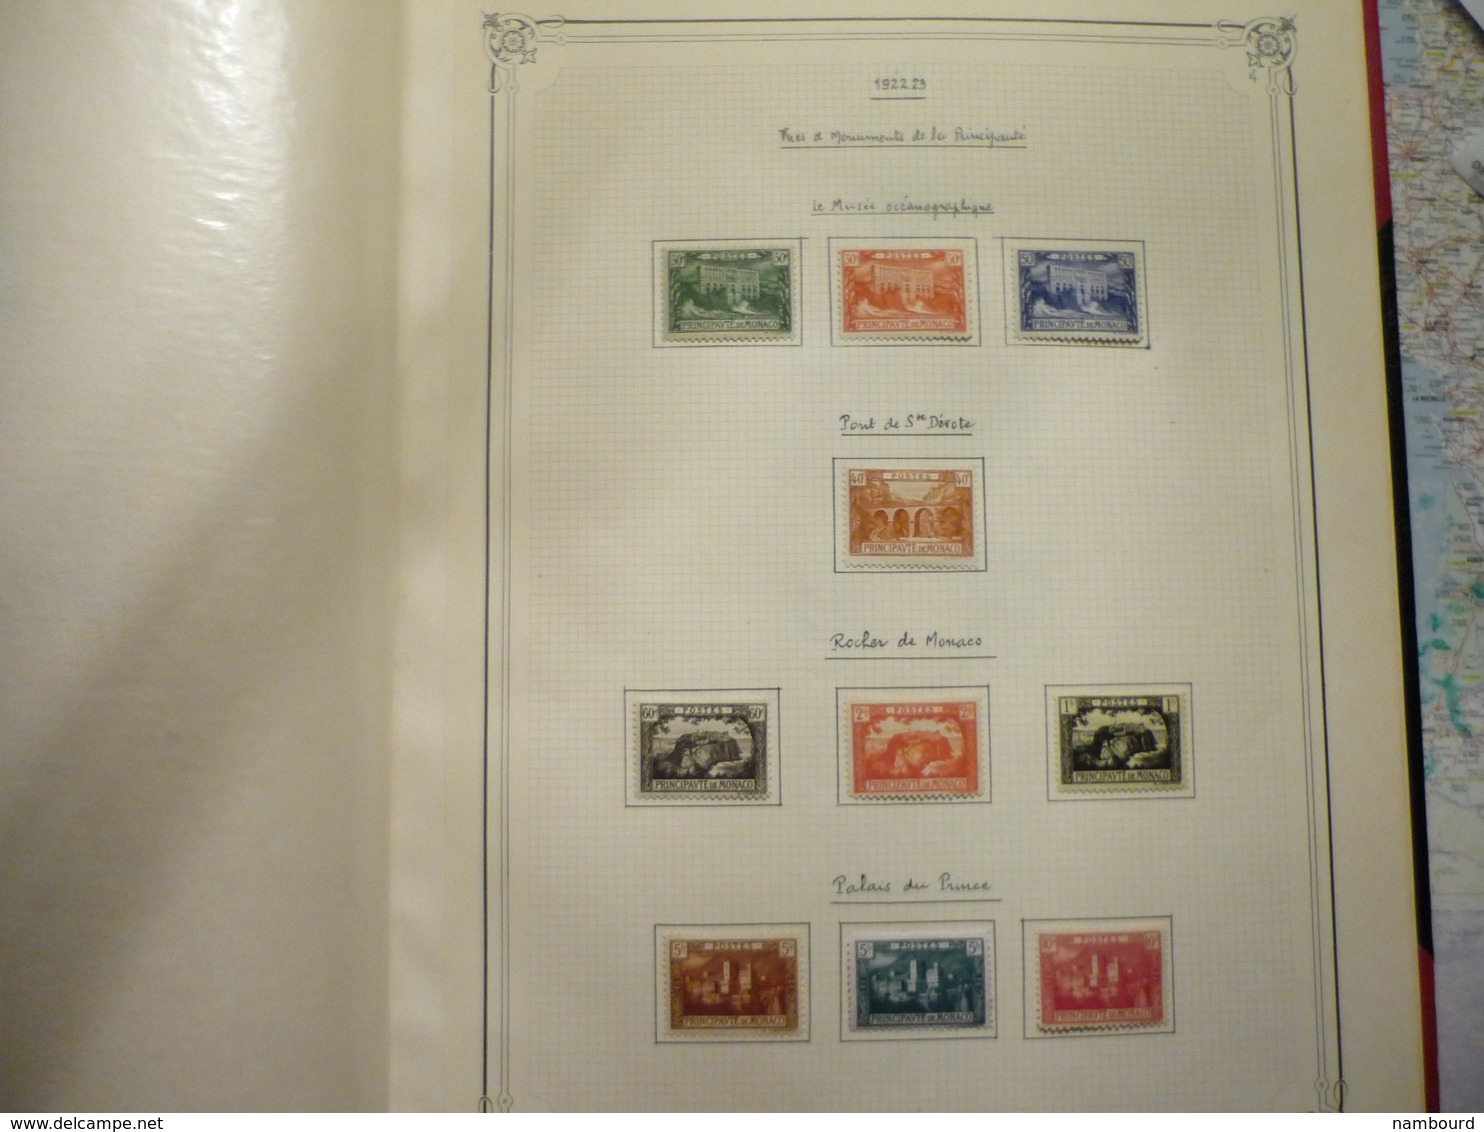 Album et boitier standard Yvert et Tellier collection de timbres de Monaco neufs avec charnières Début-1969